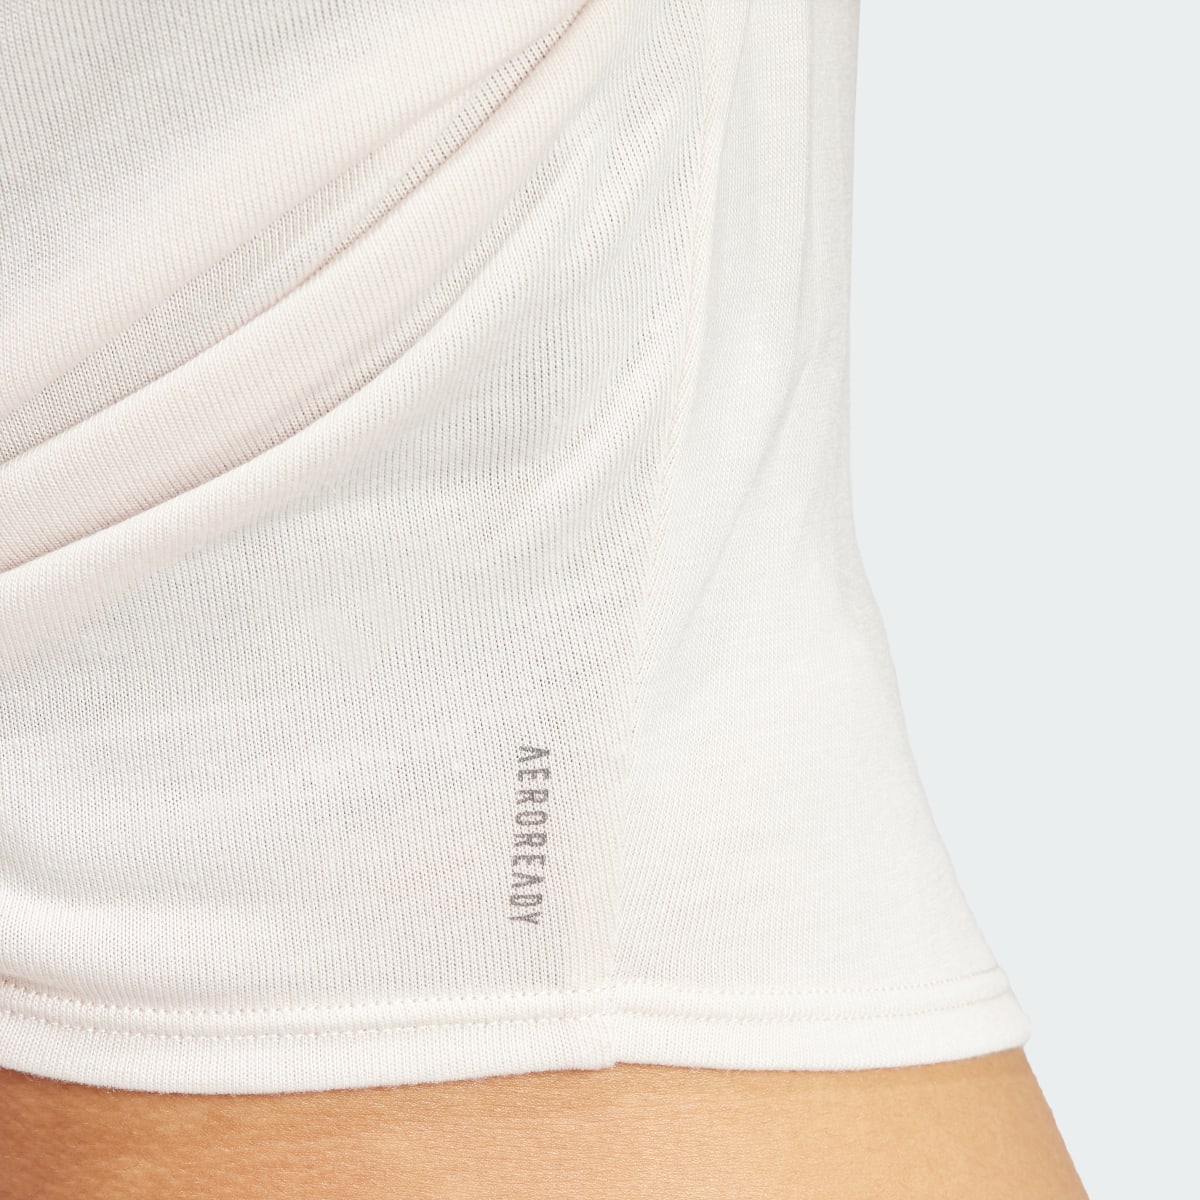 Adidas Yoga Studio Wrapped T-Shirt. 8